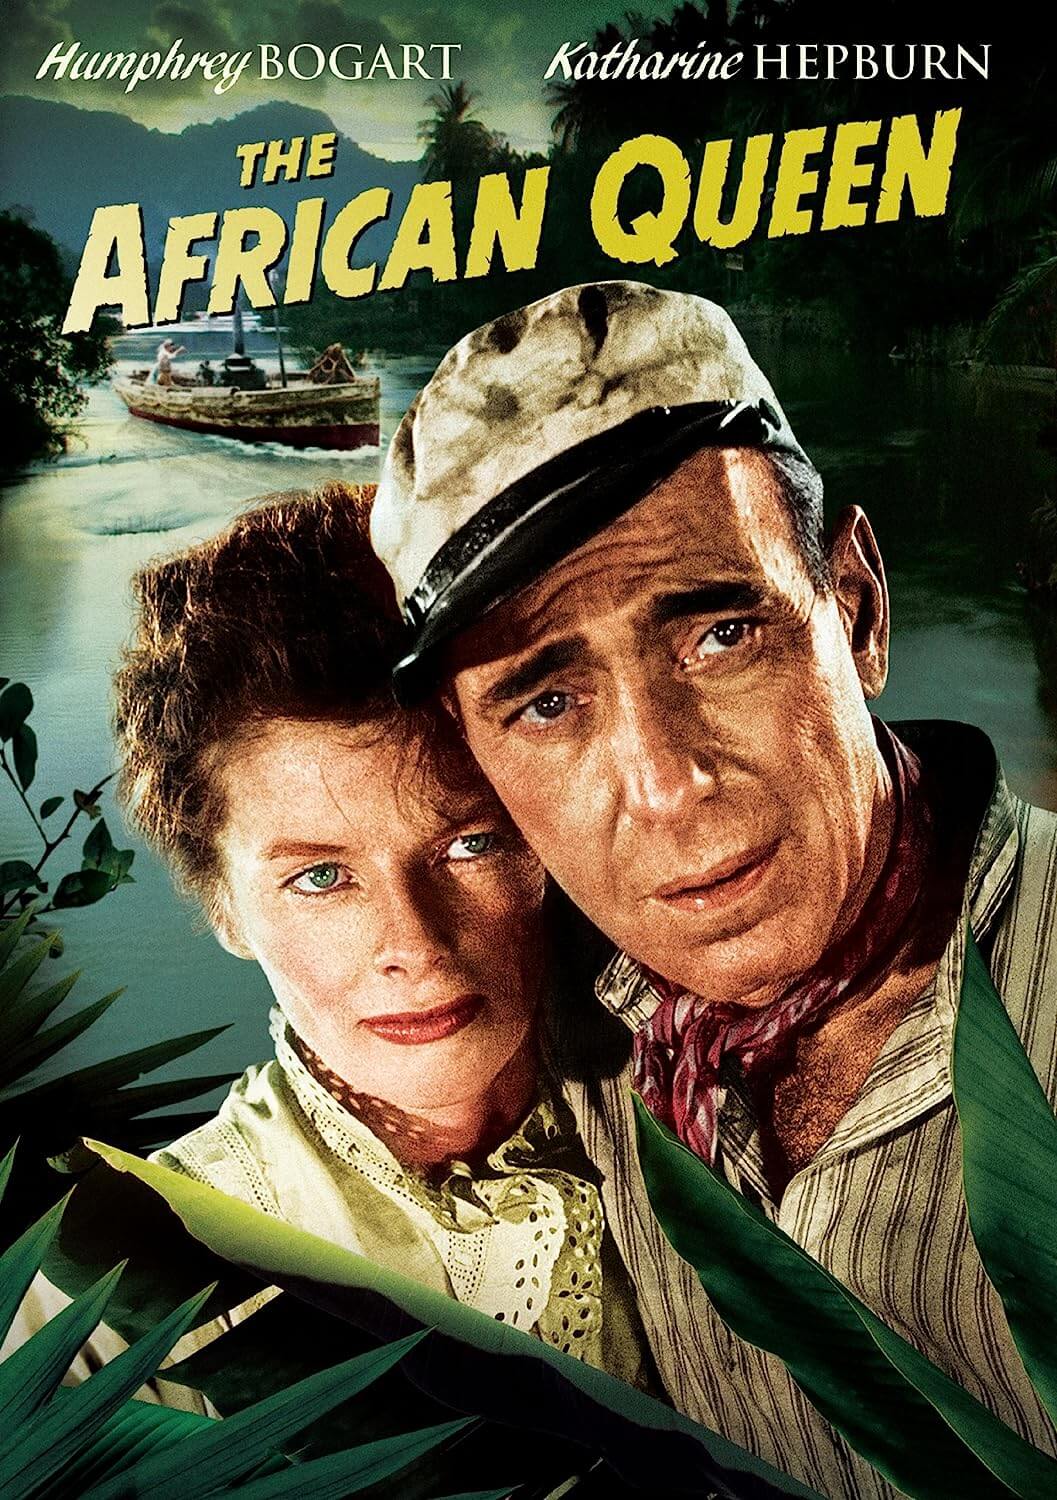 "The African Queen" (1952)